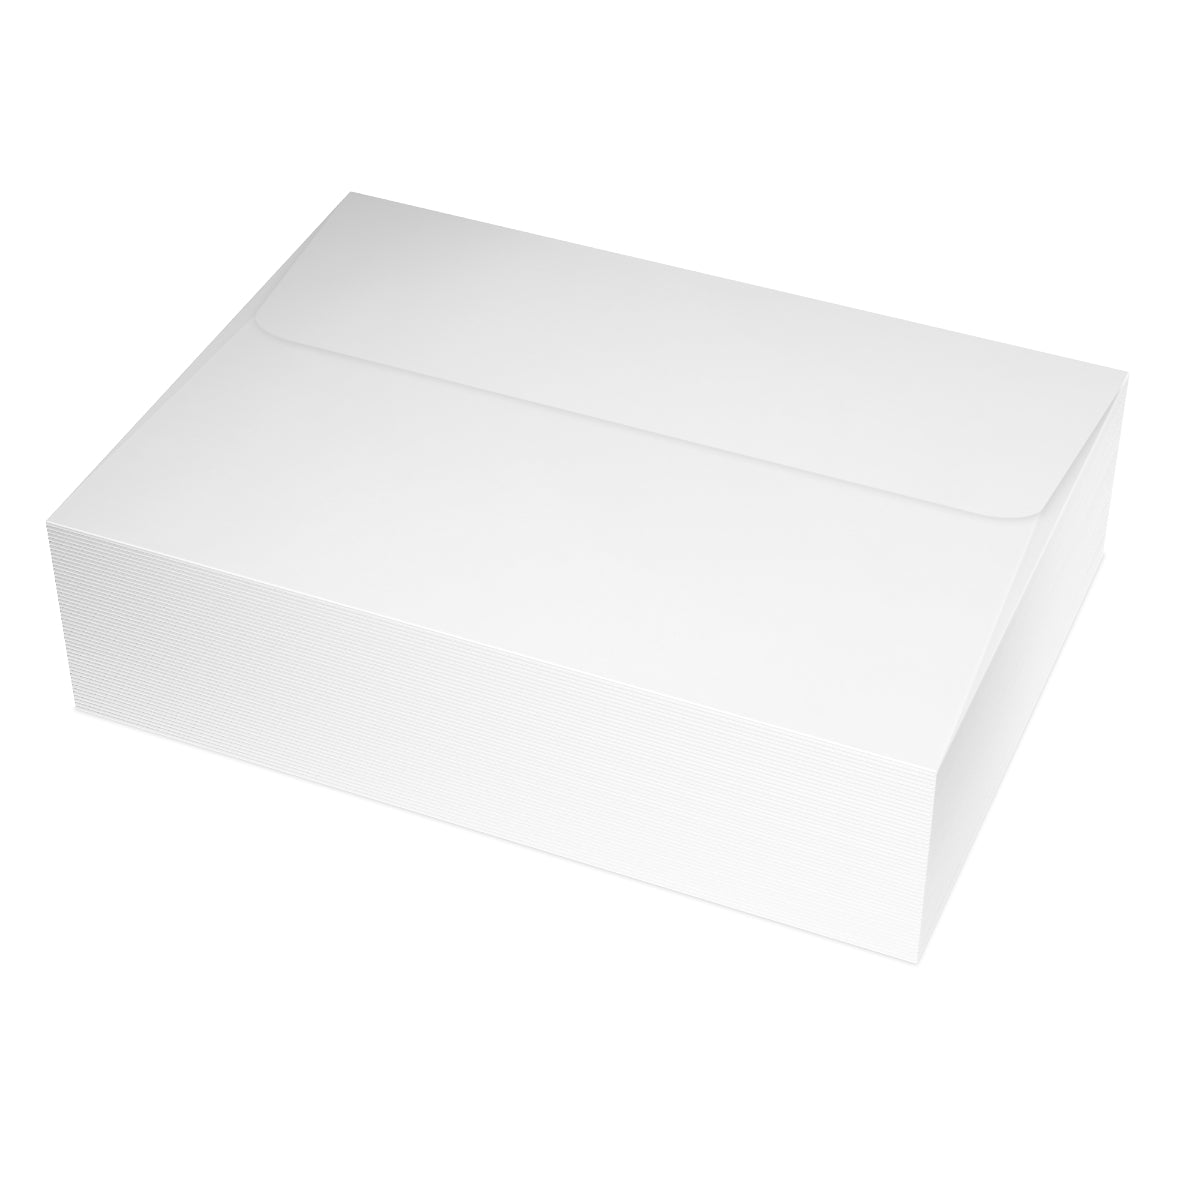 Cartes de notes mates pliées Nantucket + enveloppes (10 pièces)